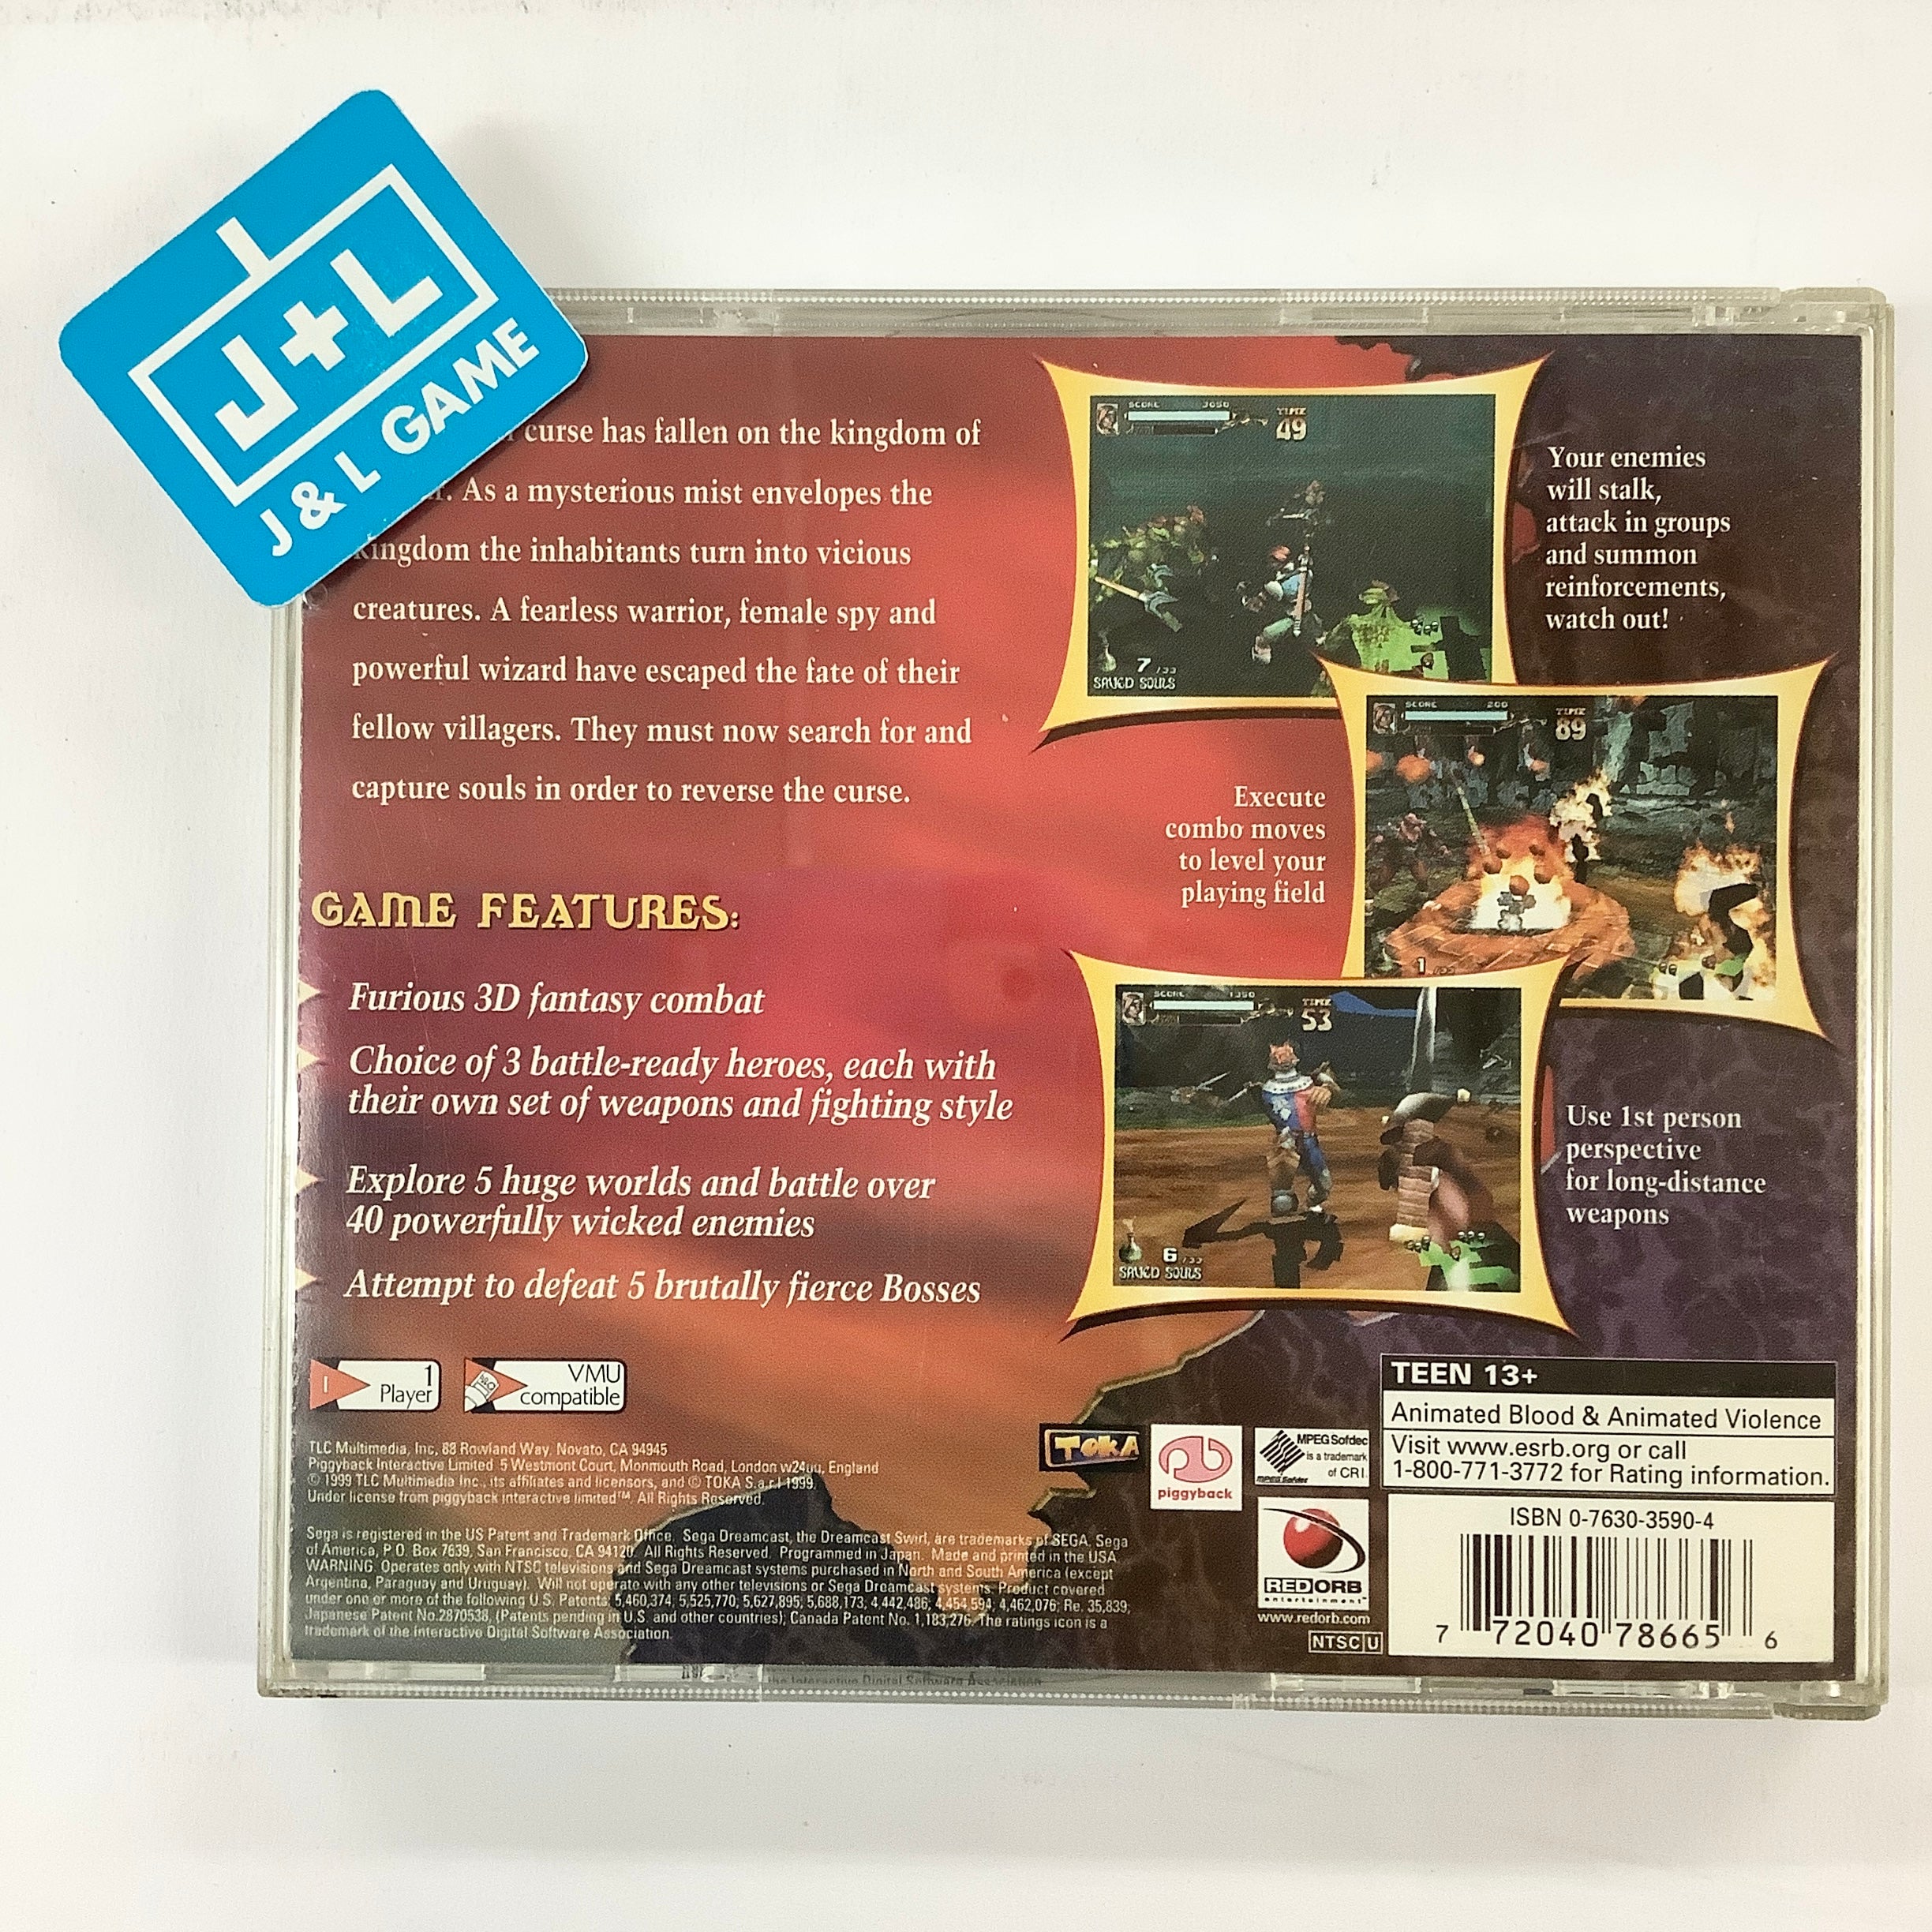 Soul Fighter - (DC) SEGA Dreamcast [Pre-Owned] Video Games Mindscape   